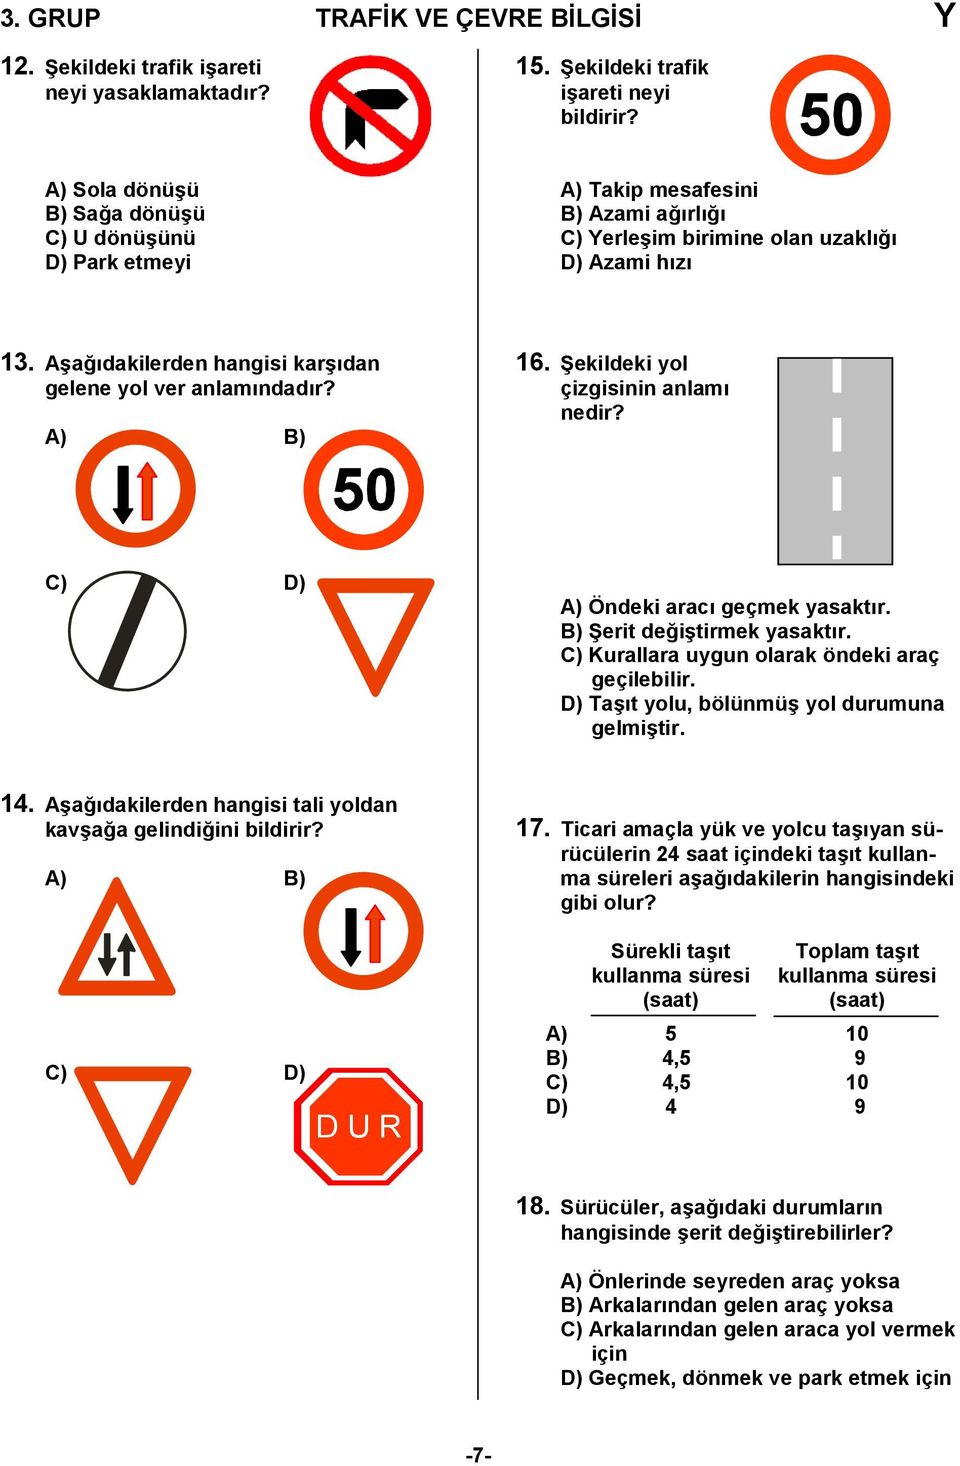 A) B) 6. Cekildeki yol çizgisinin anlam nedir? C) D) A) Öndeki arac geçmek yasaktr. B) Cerit de,i/tirmek yasaktr. C) Kurallara uygun olarak öndeki araç geçilebilir.